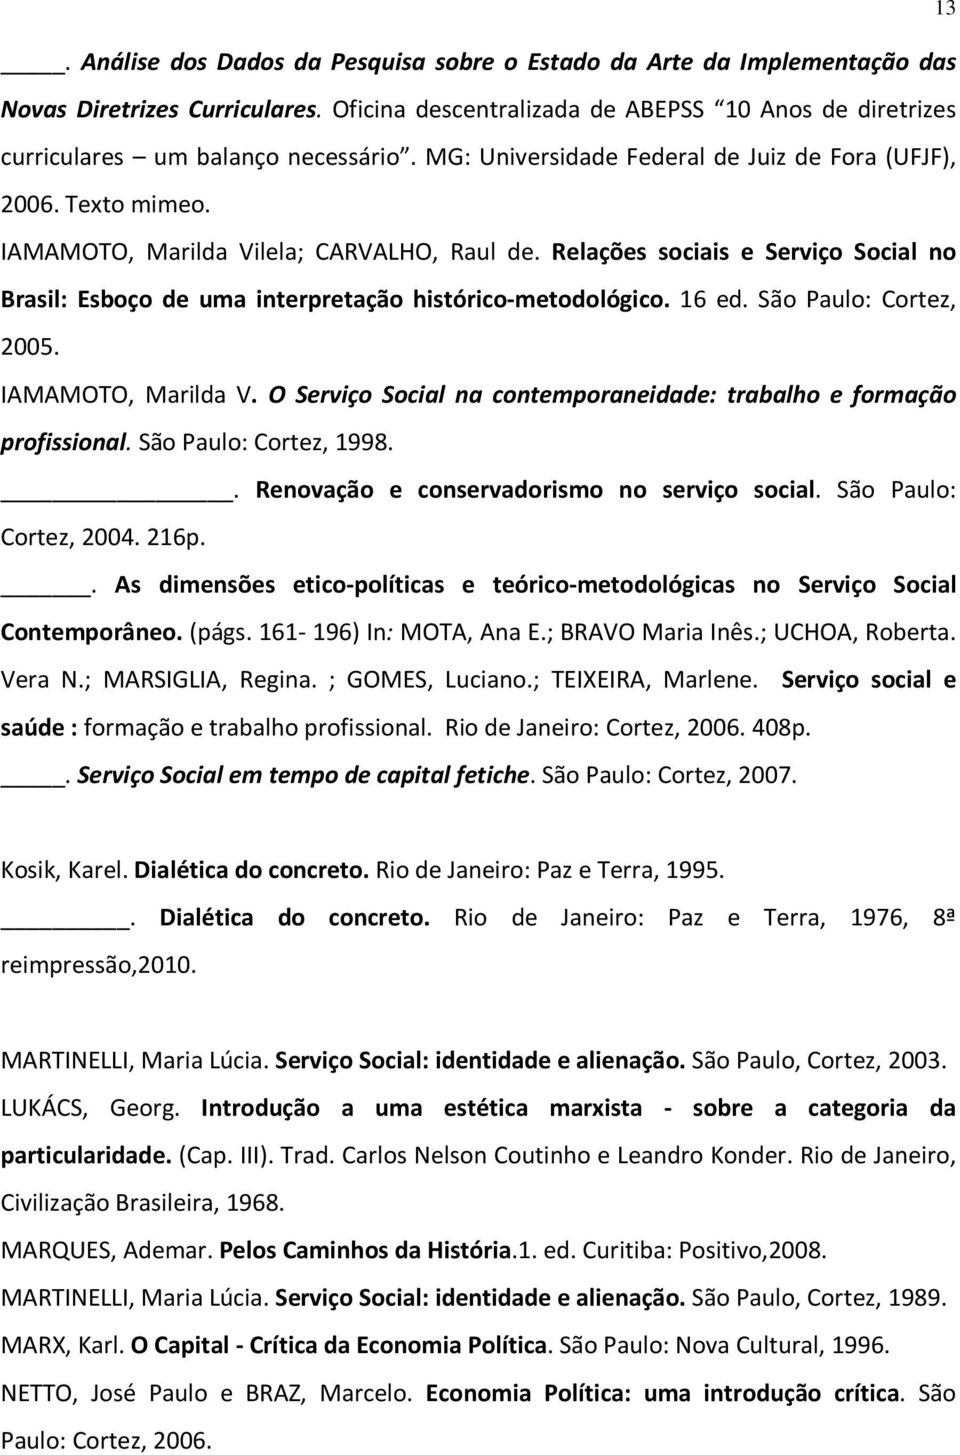 Relações sociais e Serviço Social no Brasil: Esboço de uma interpretação histórico-metodológico. 16 ed. São Paulo: Cortez, 2005. IAMAMOTO, Marilda V.